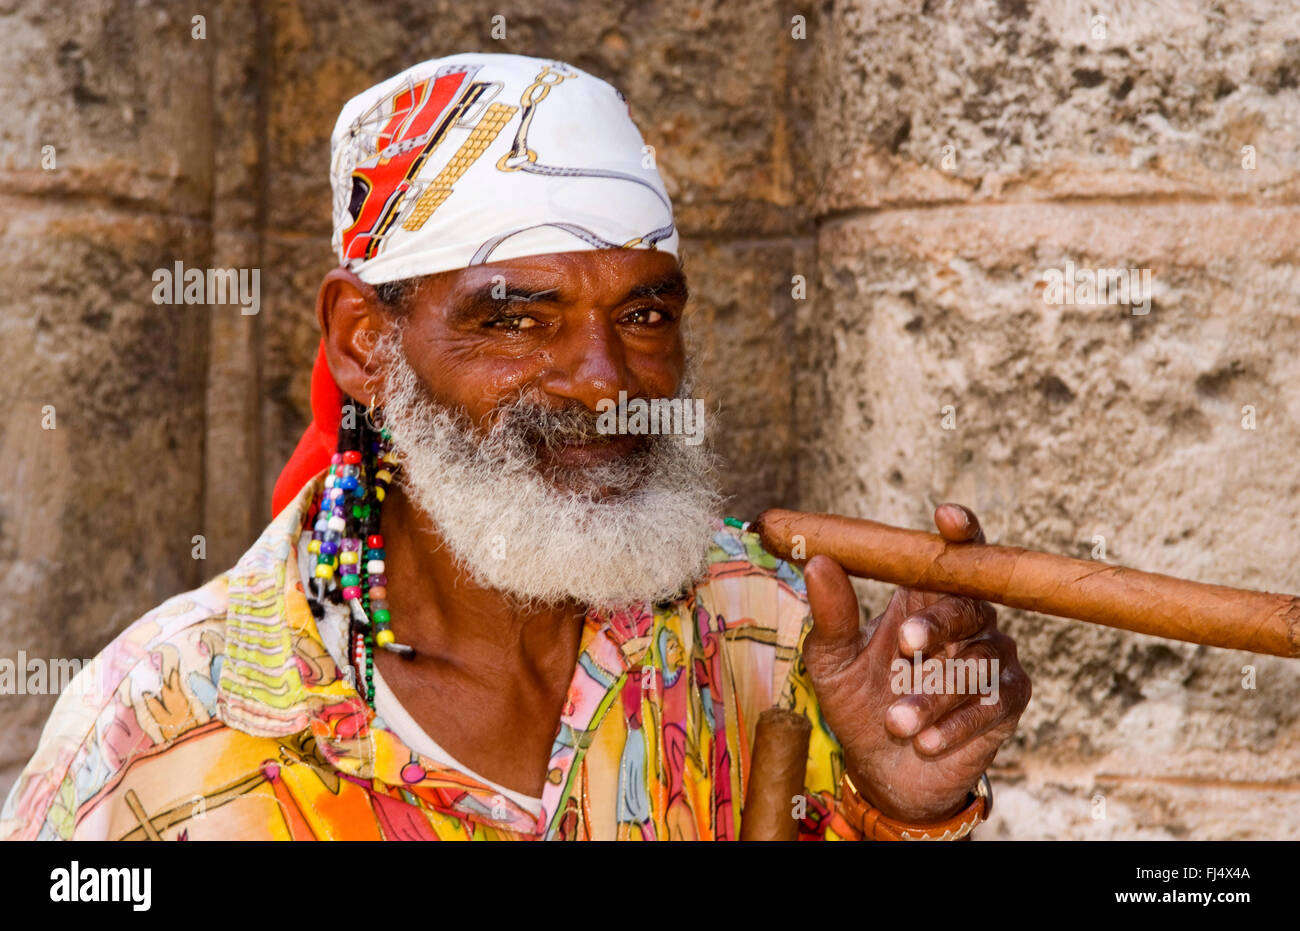 Cubains âgés avec barbe complète et une longue écharpe fumeurs de cigare, portrait, Cuba, La Habana Banque D'Images